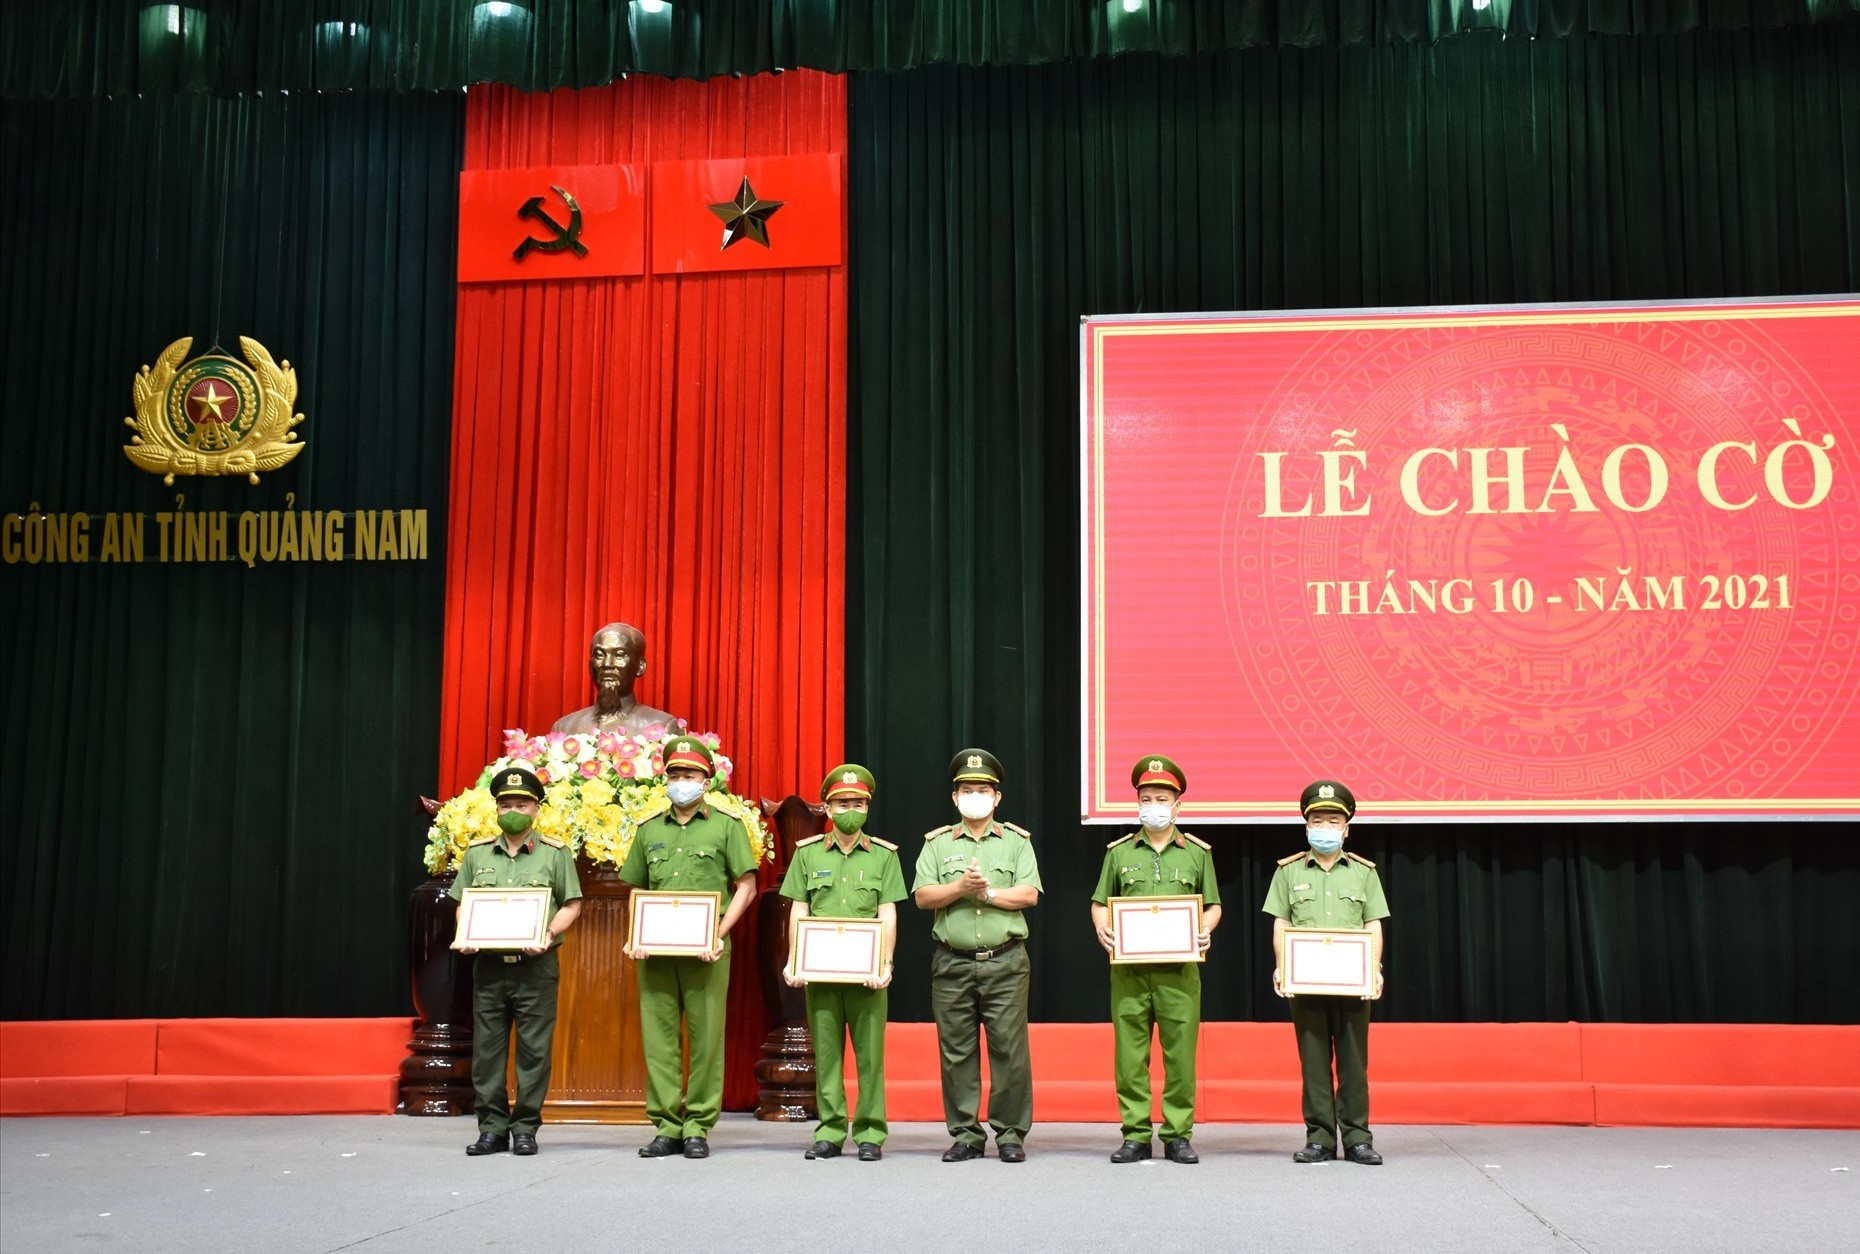 Đại tá Huỳnh Sông Thu, Phó Giám đốc Công an tỉnh và trao giấy khen cho các tập thể, cá nhân có thành tích xuất sắc trong đợt thi đua kỷ niệm 60 năm Ngày truyền thống lực lượng Cảnh sát PCCC và CNCH. Ảnh: M.T